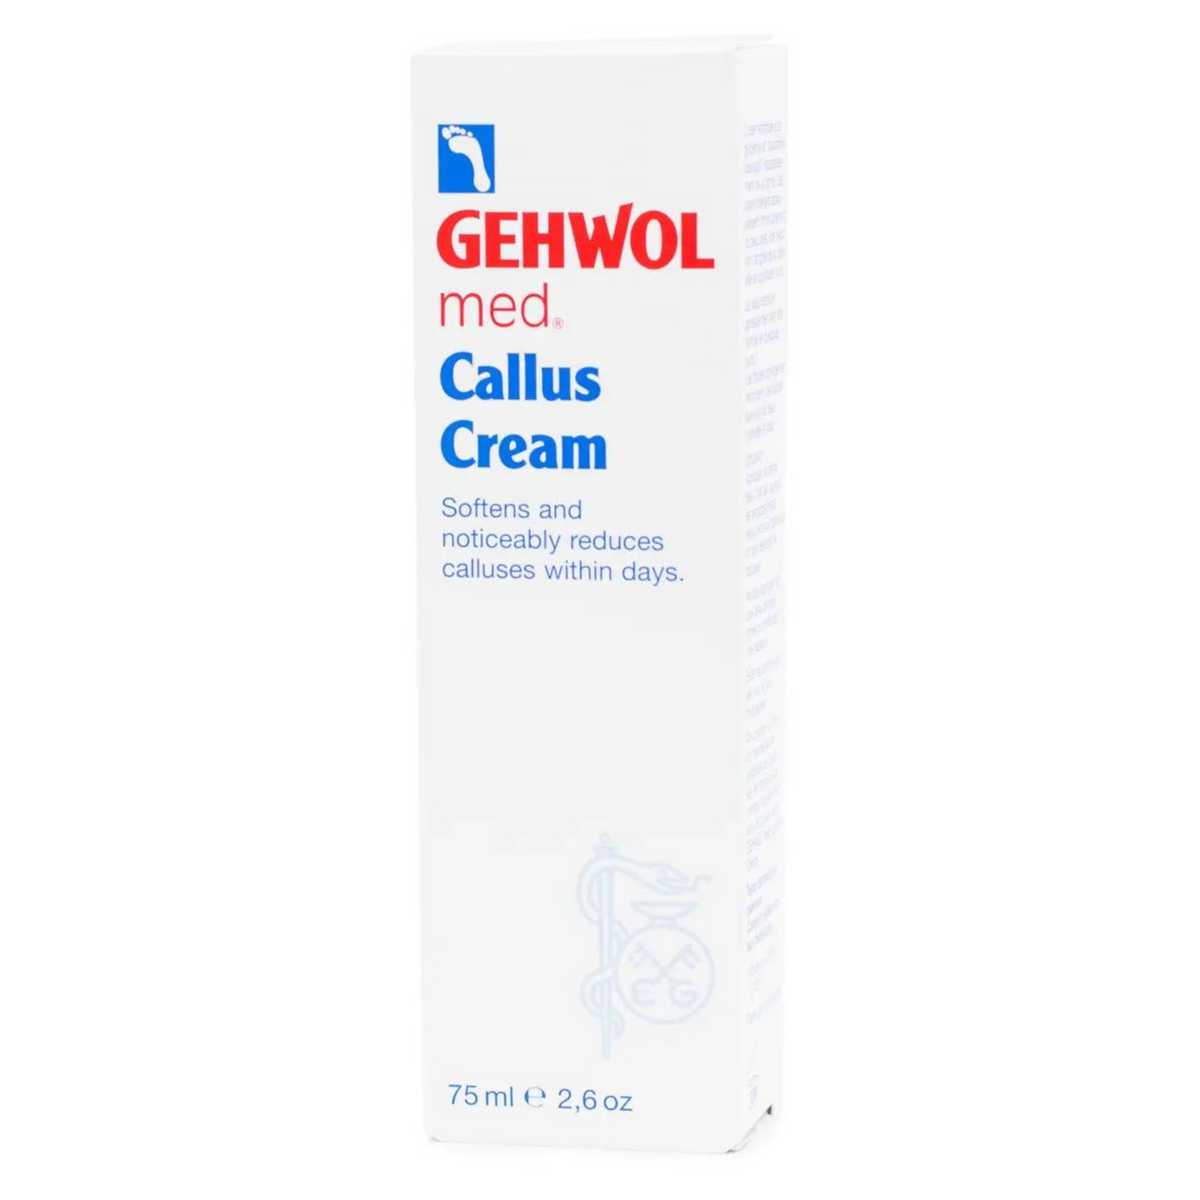 Primary Image of Gehwol med Callus Cream (75 ml) 